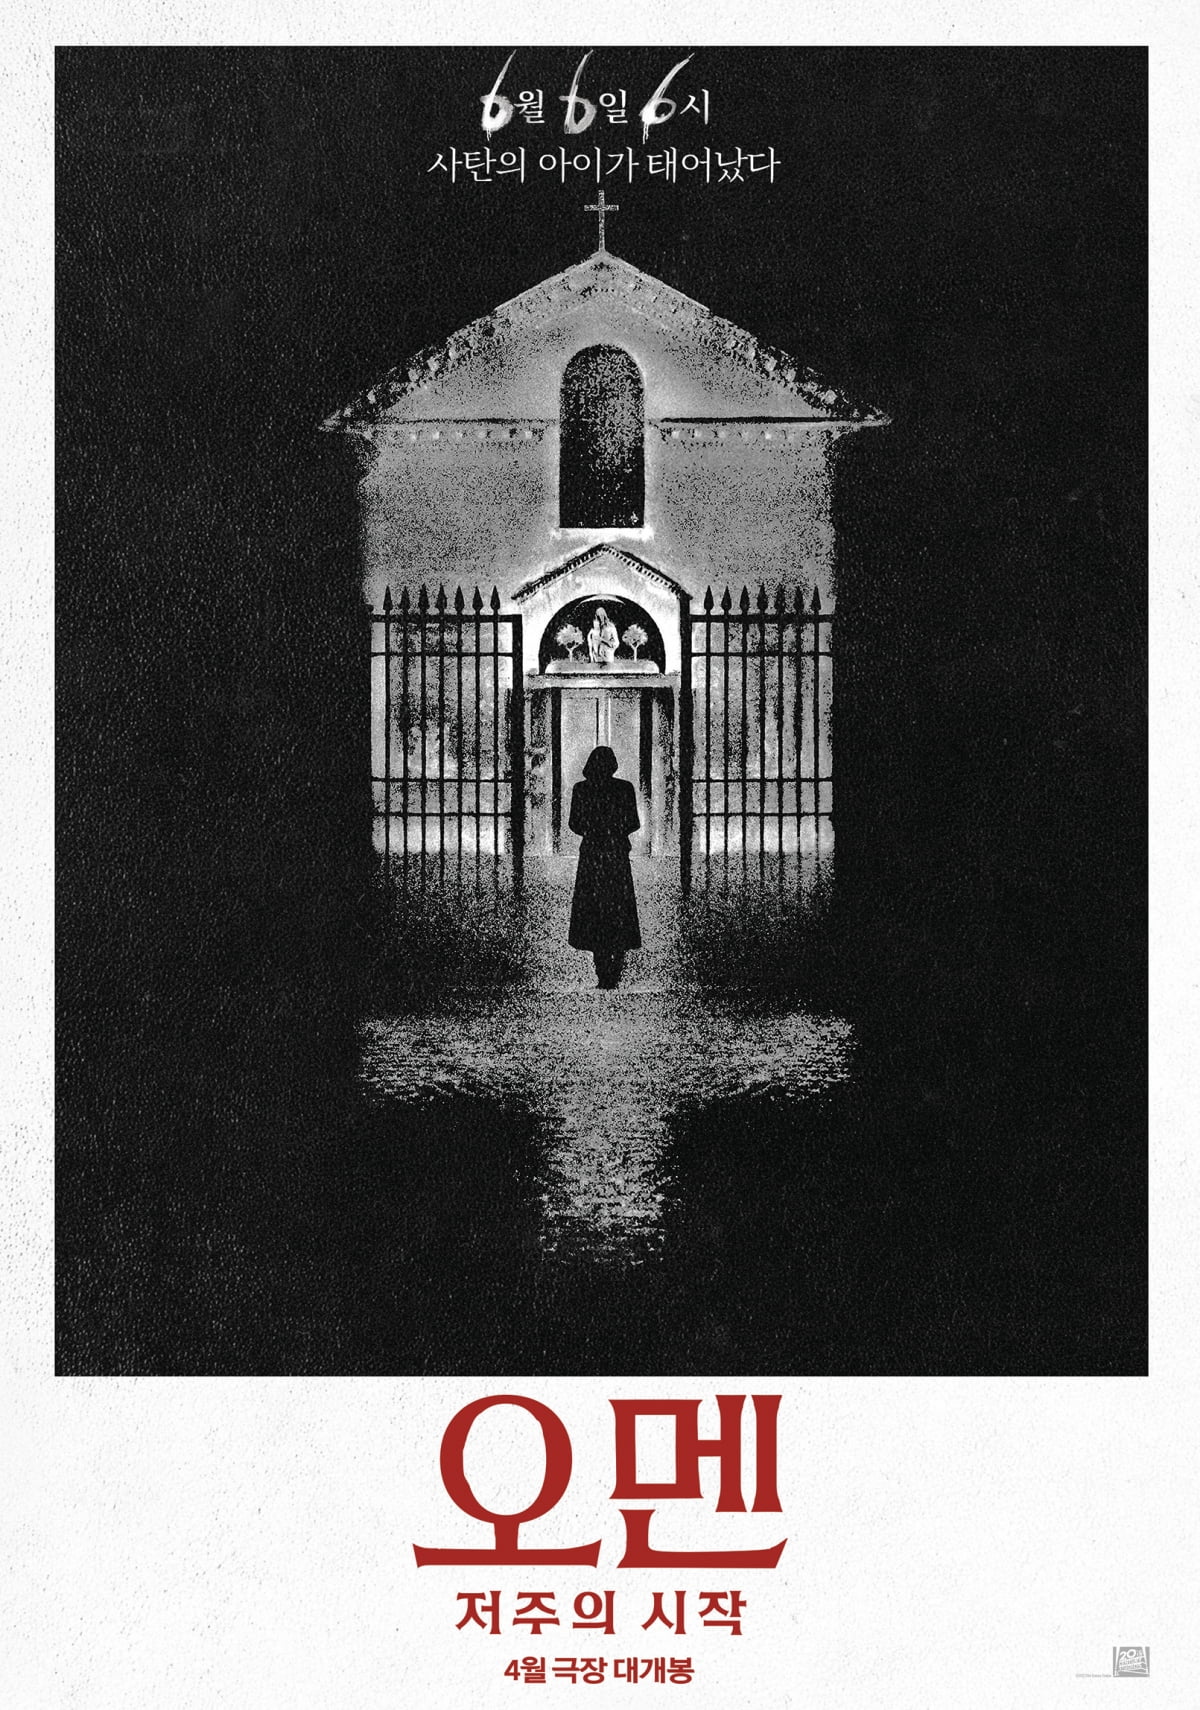 영화 '오멘: 저주의 시작' 티저 포스터. /사진 제공=월트디즈니 컴퍼니 코리아